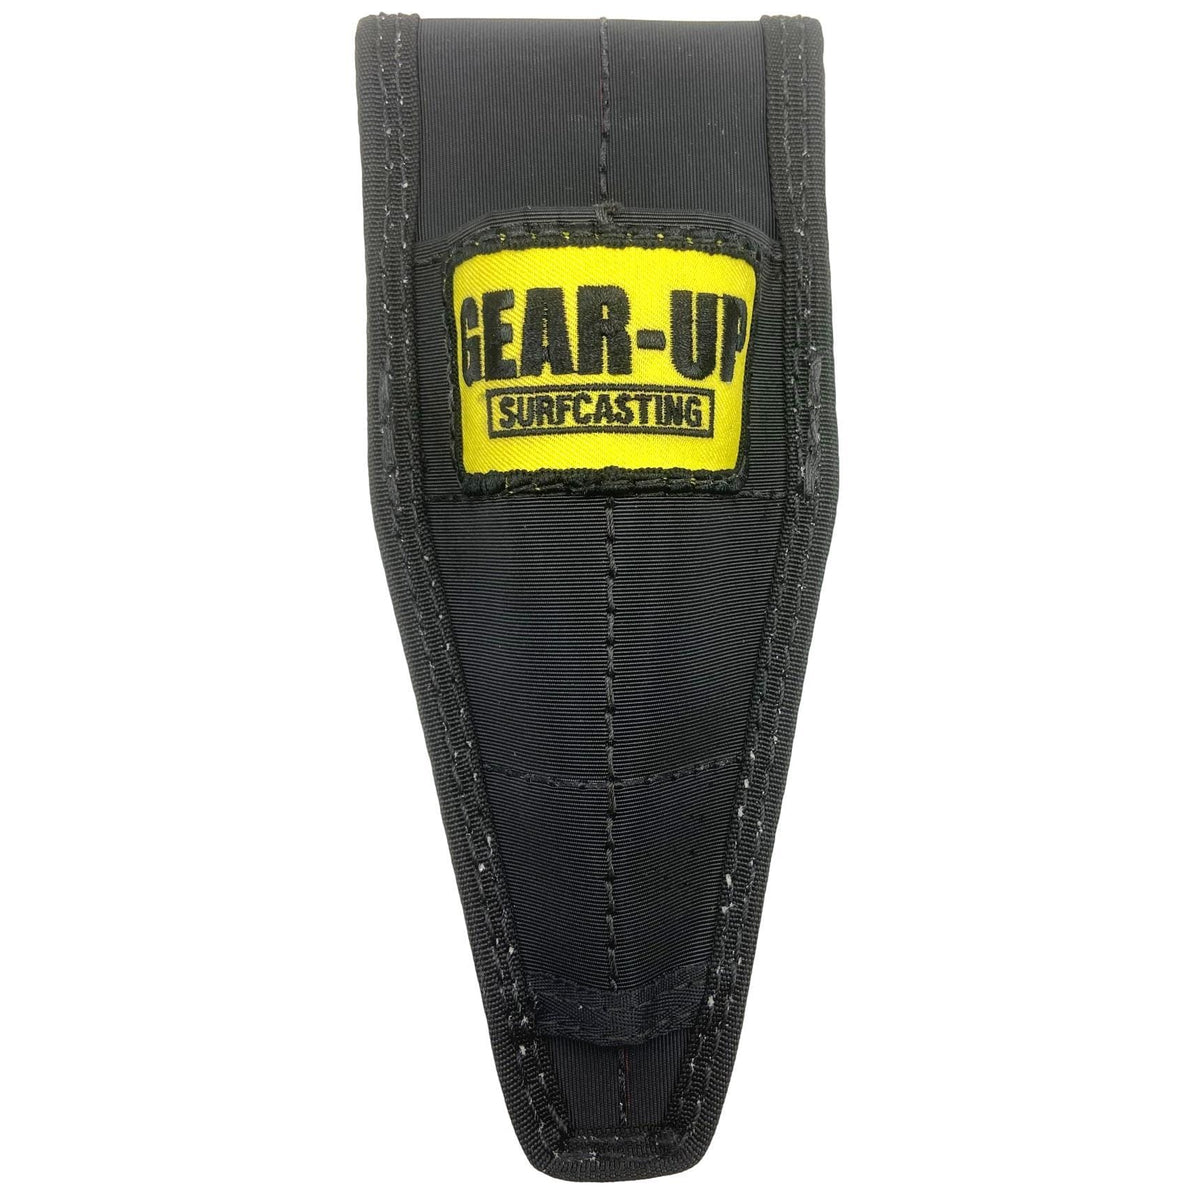 Gear-Up Plier Sheath Black